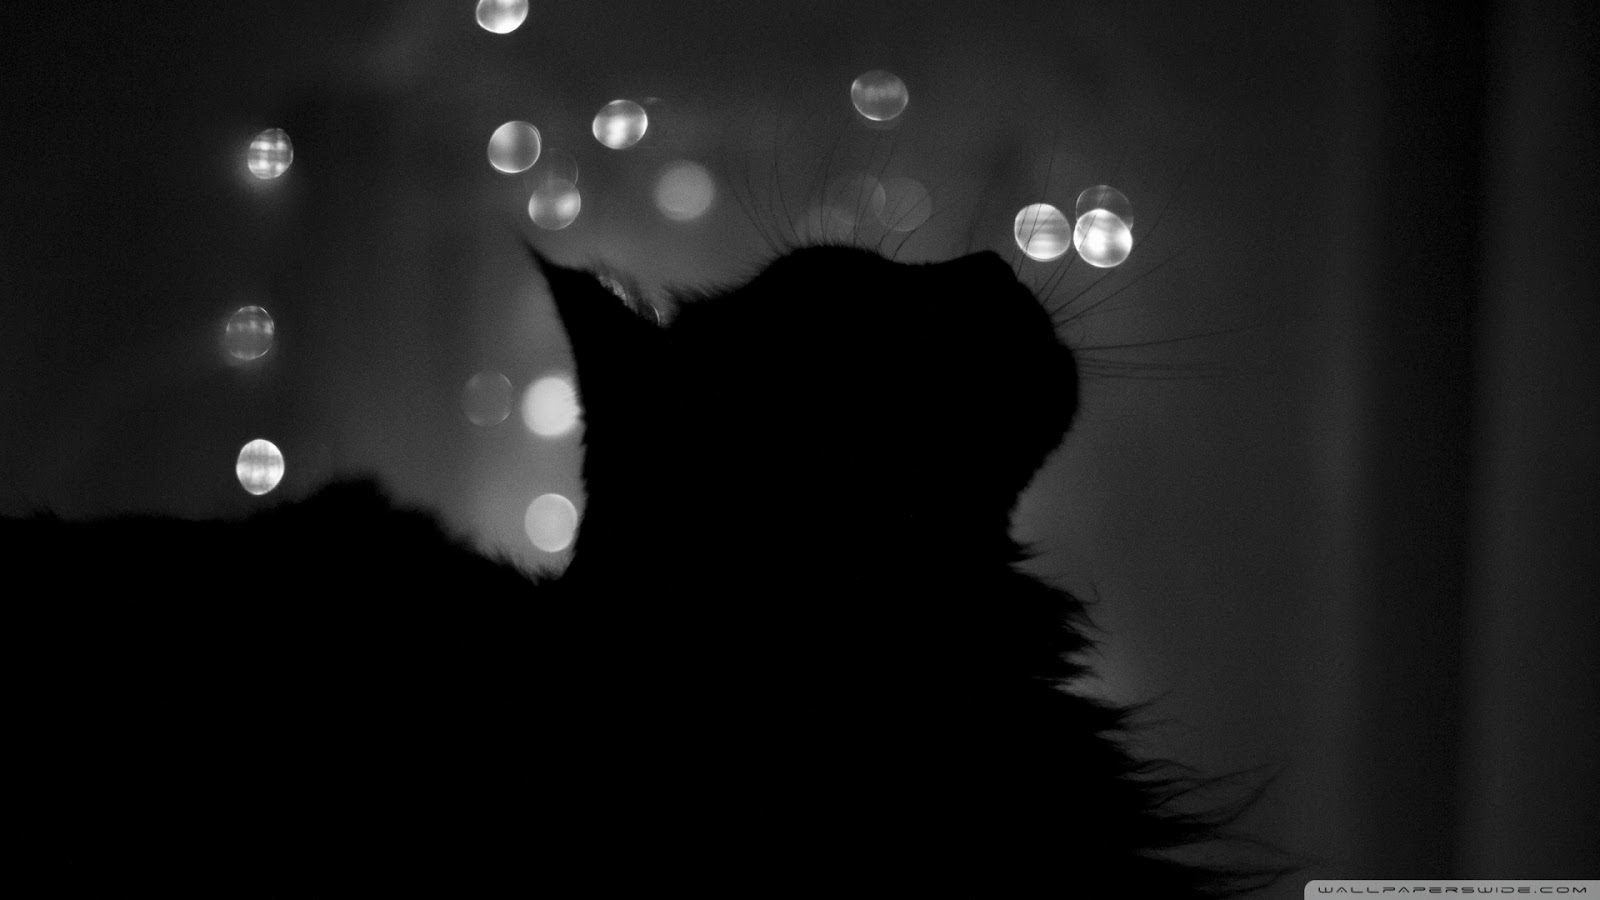 gatto nero wallpaper hd,nero,bianco e nero,leggero,fotografia in bianco e nero,buio